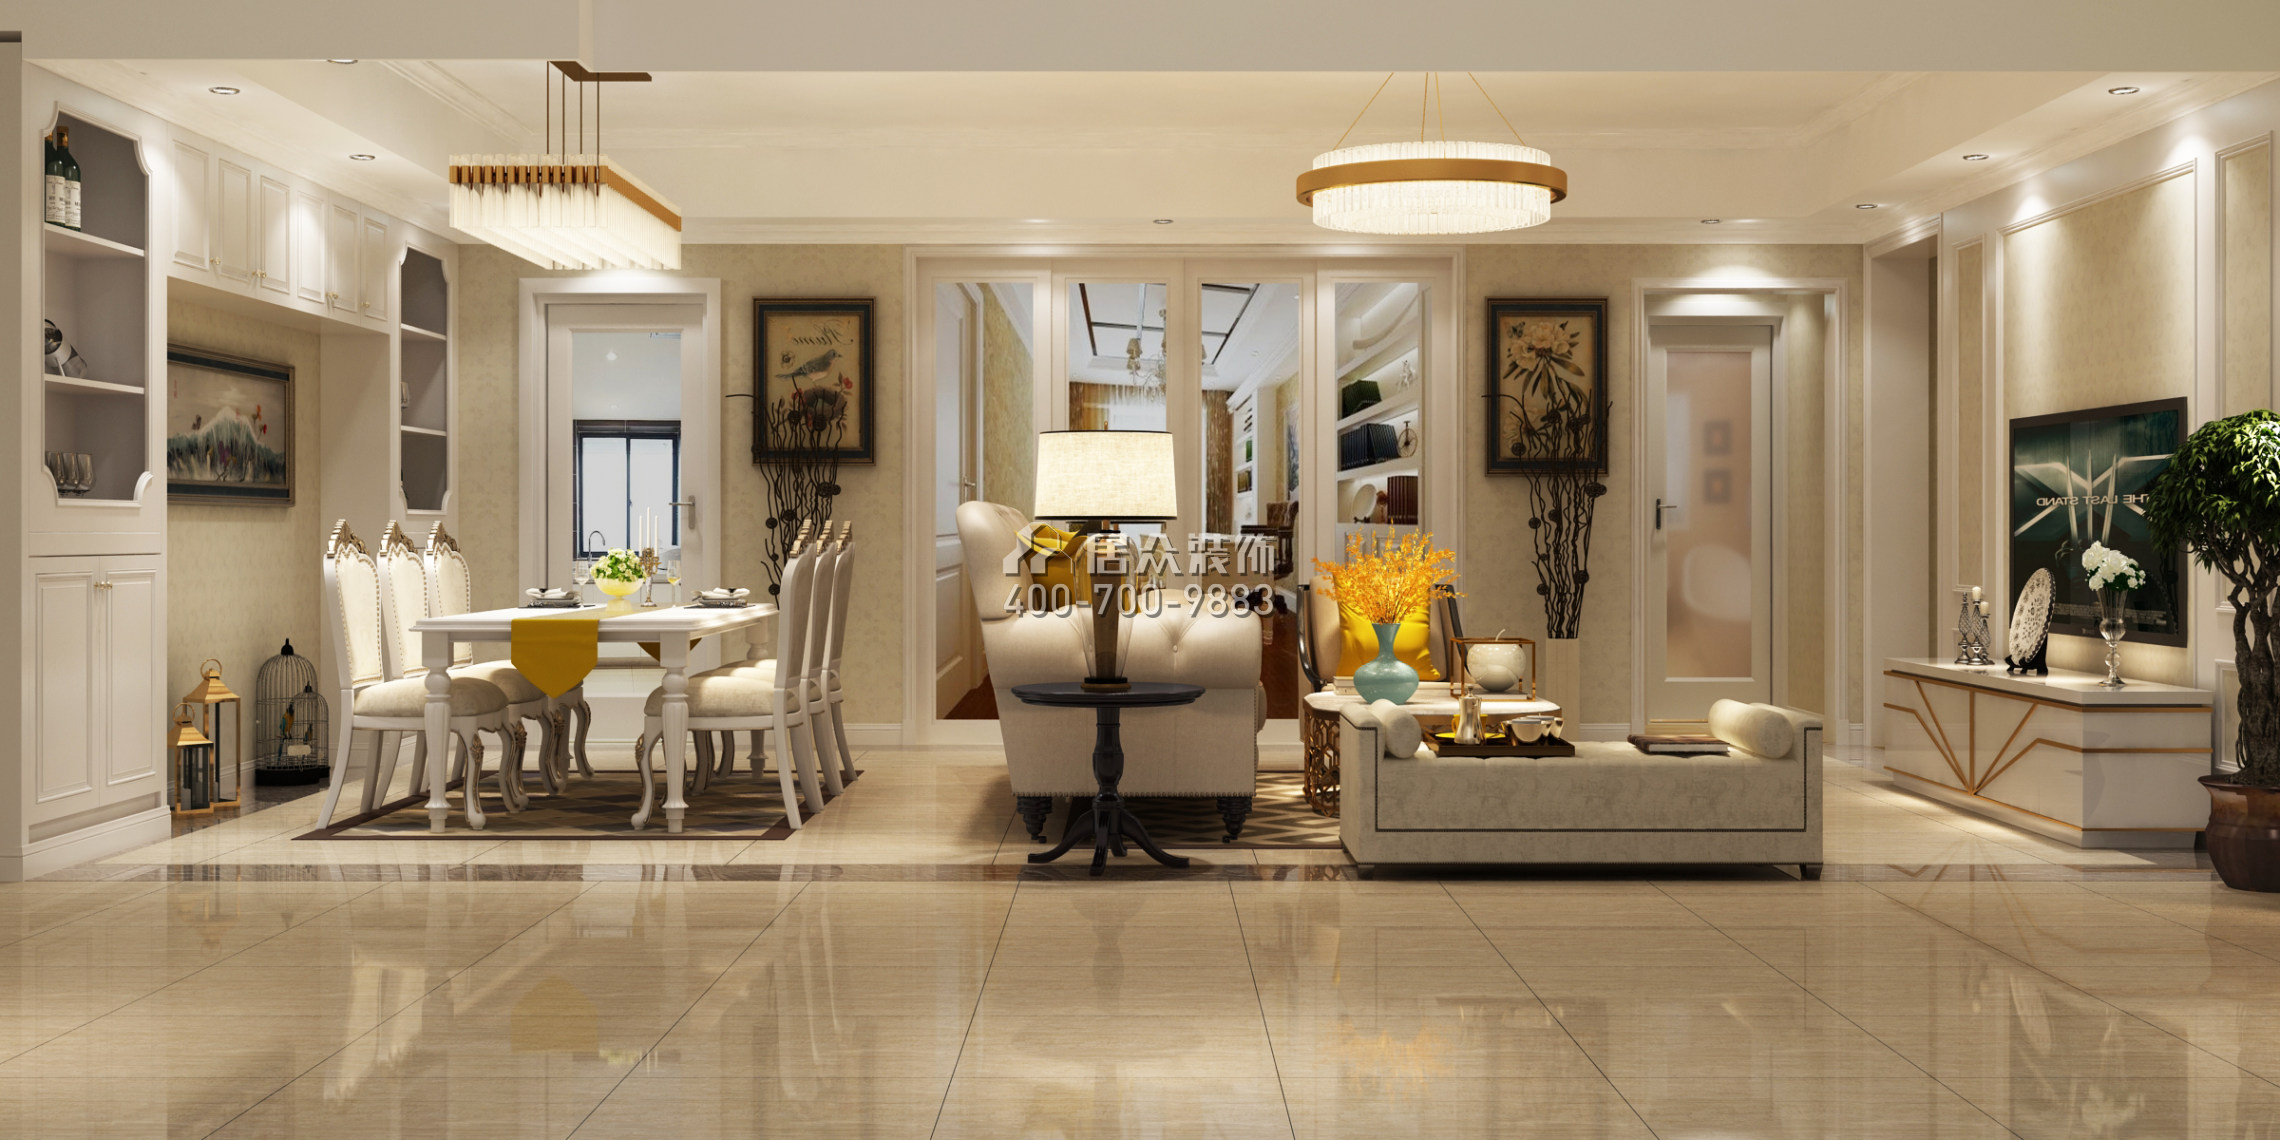 招商卡達凱斯140平方米歐式風格平層戶型客廳裝修效果圖